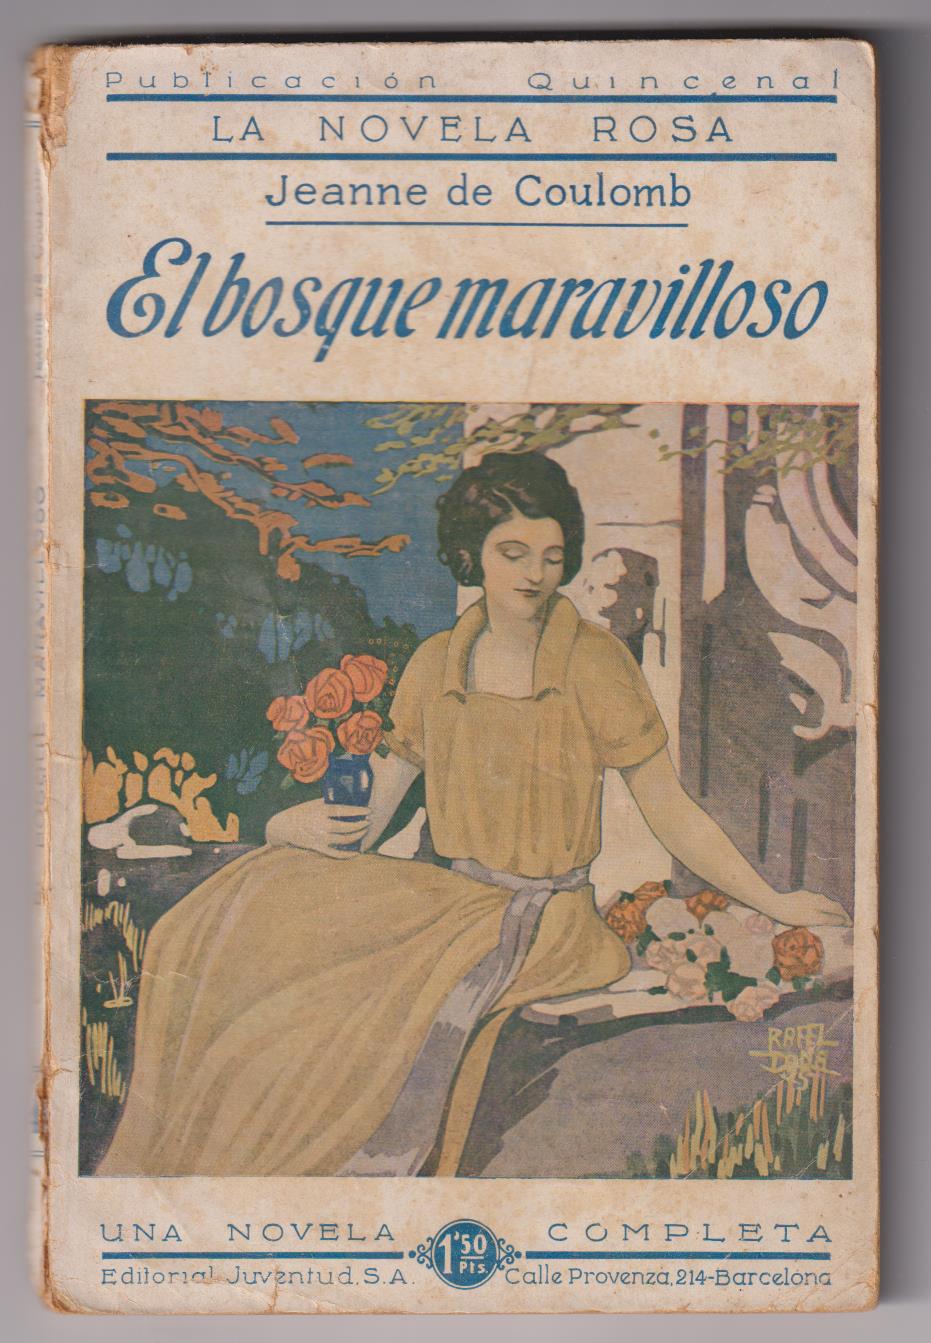 La Novela Rosa. El bosque Maravillosa por Jeanne de Coulomb. Juventud 1925